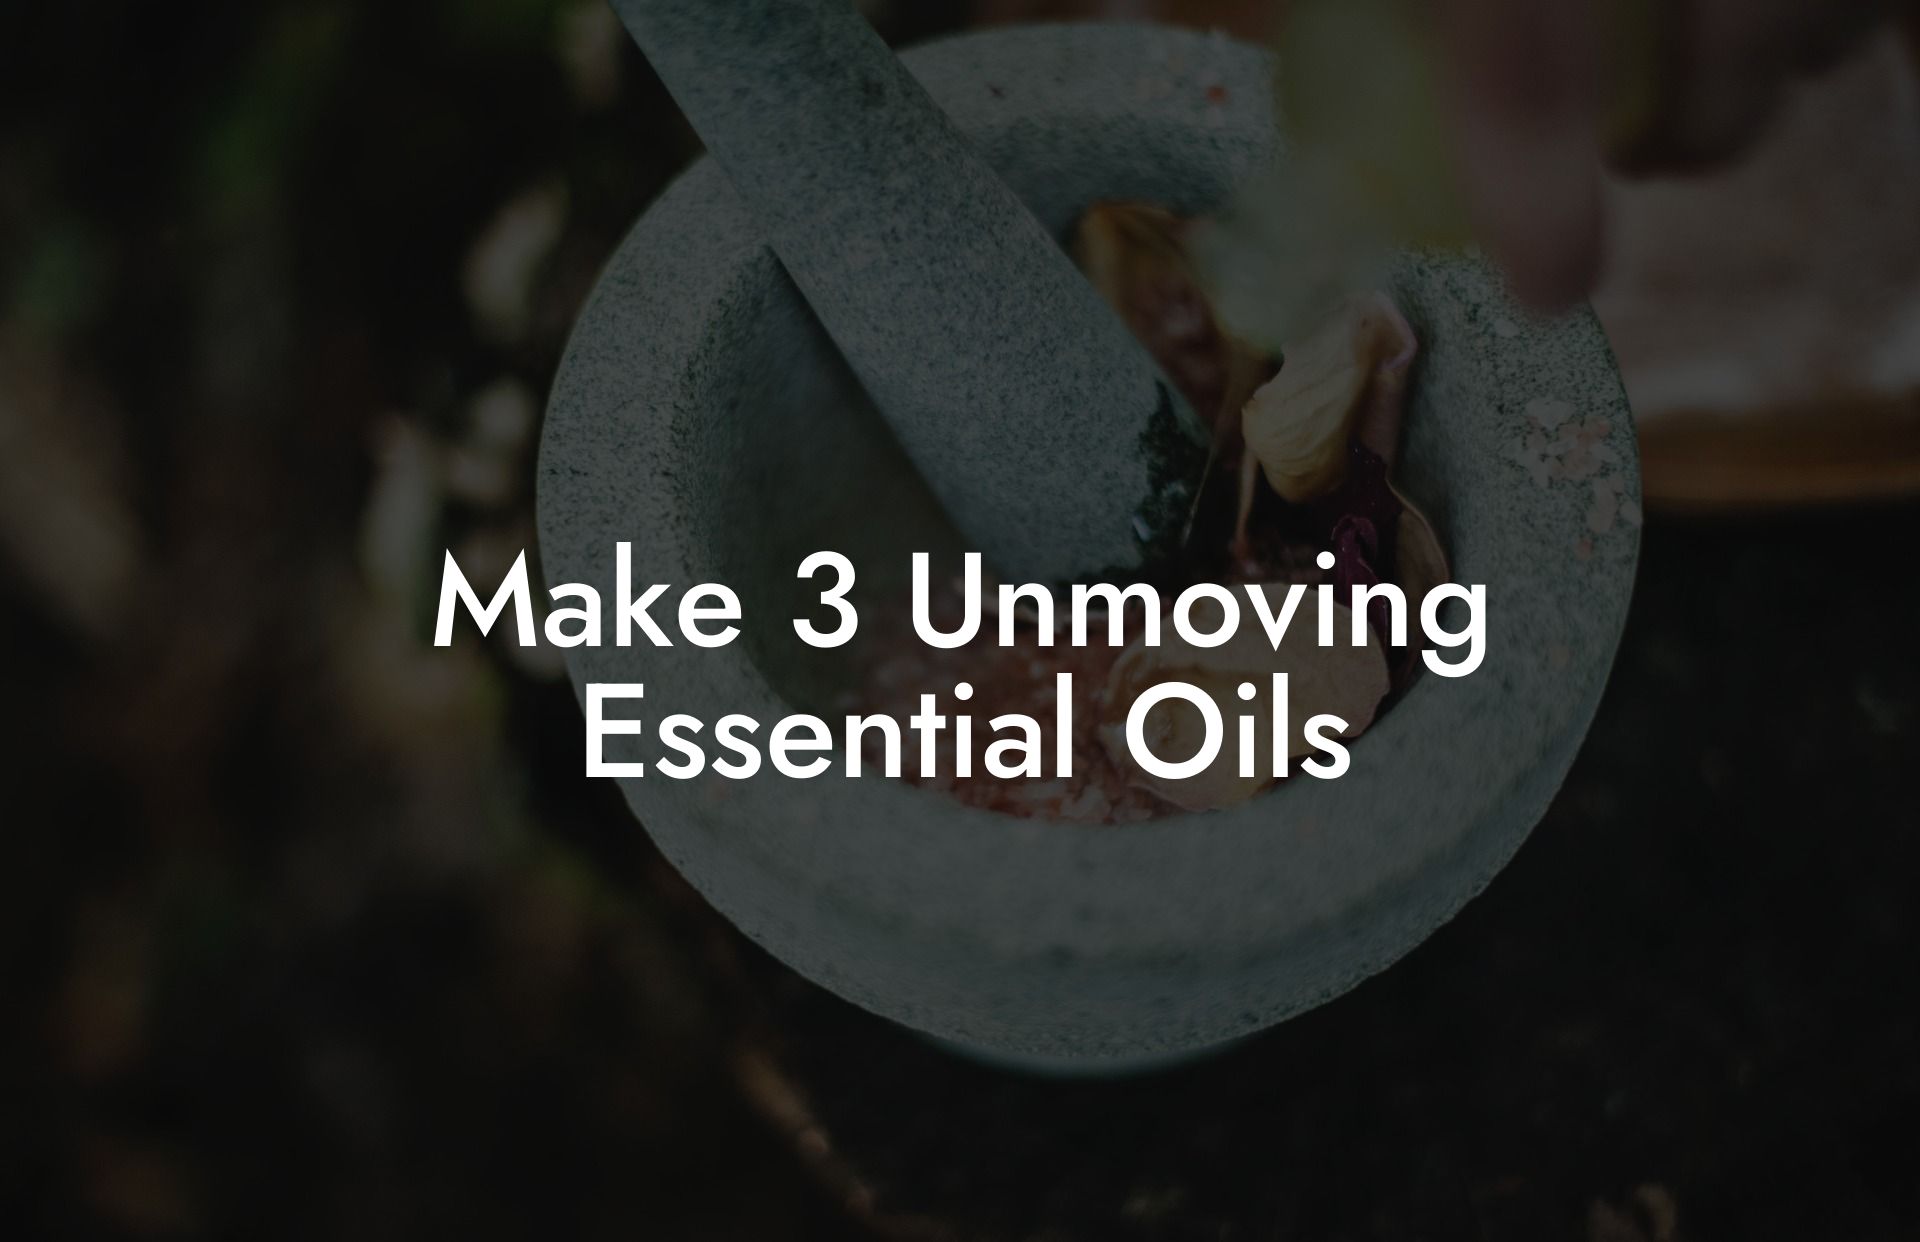 Make 3 Unmoving Essential Oils